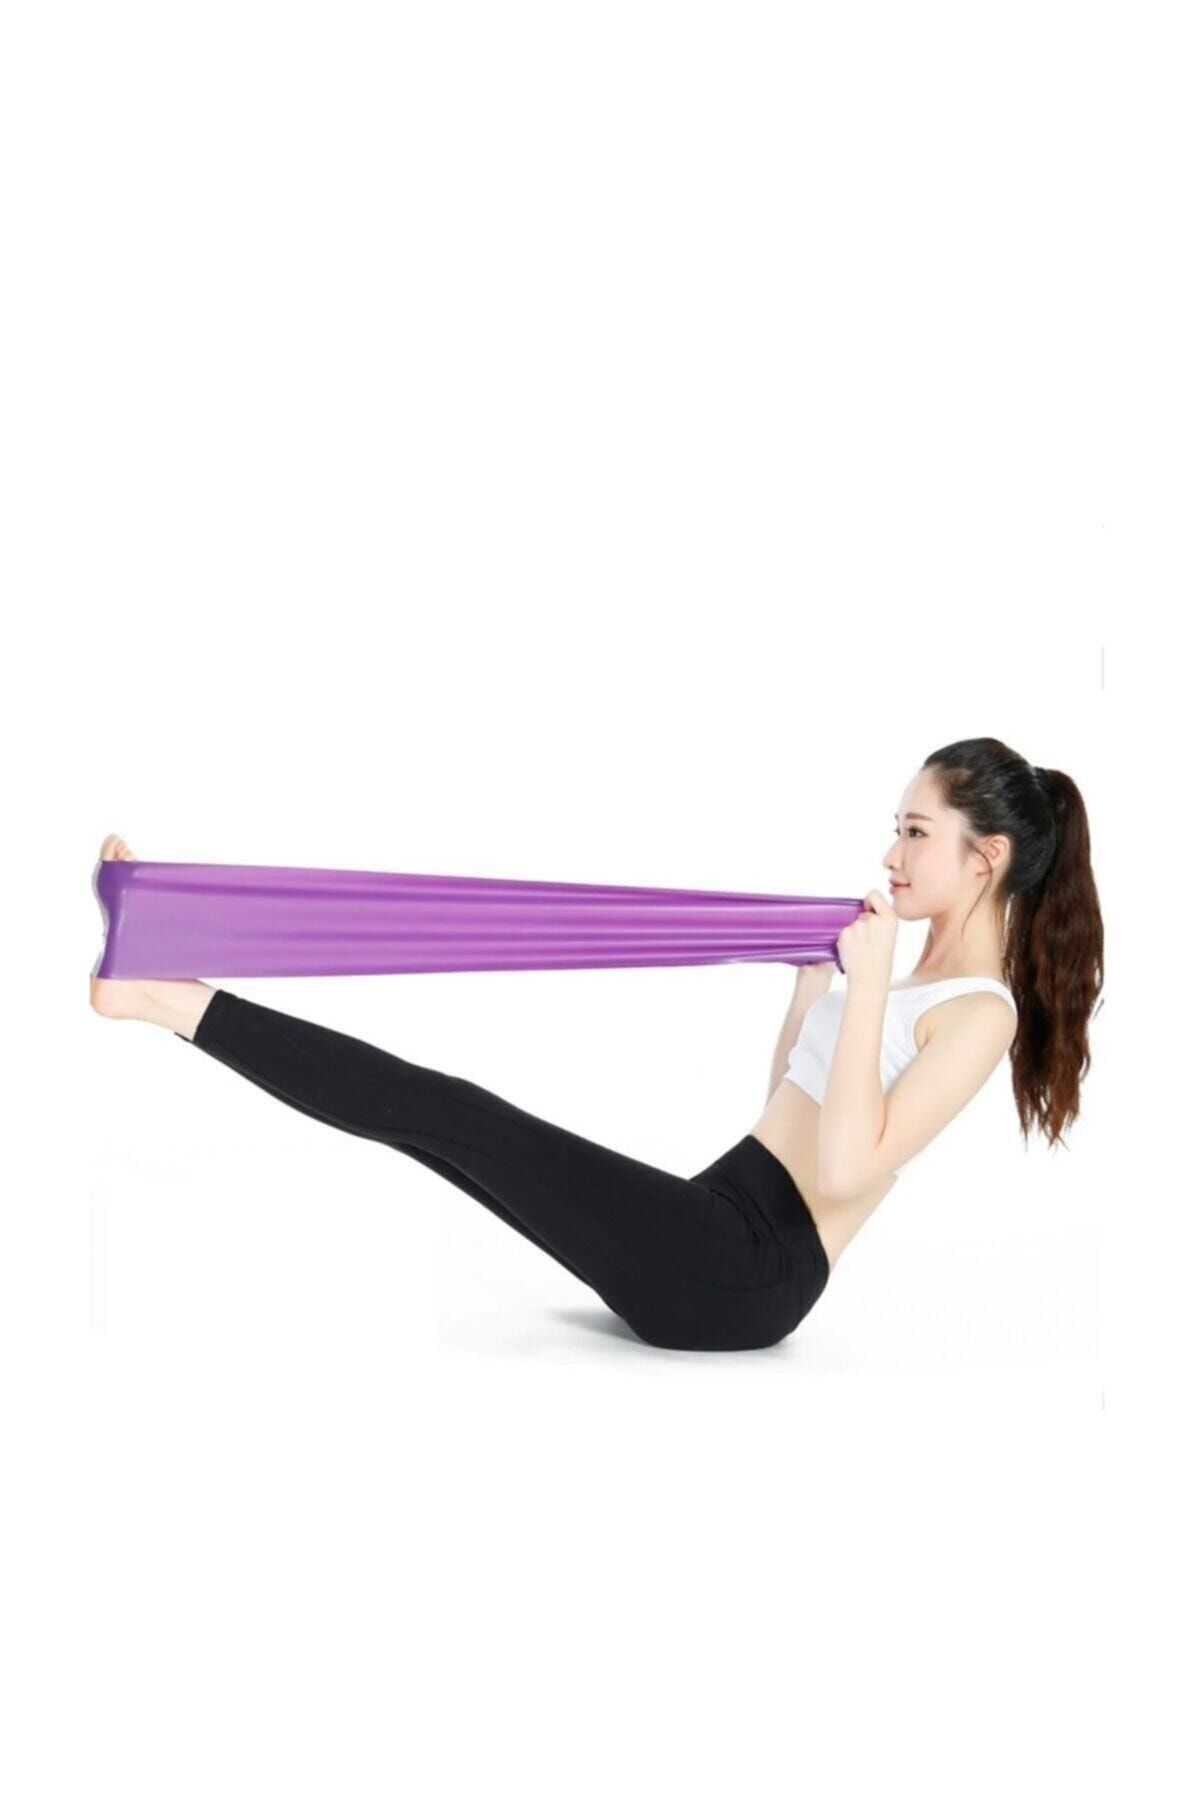 Cosfer Orta Direnç Pilates Yoga Bandı Egzersiz Direnç Güç Lastiği